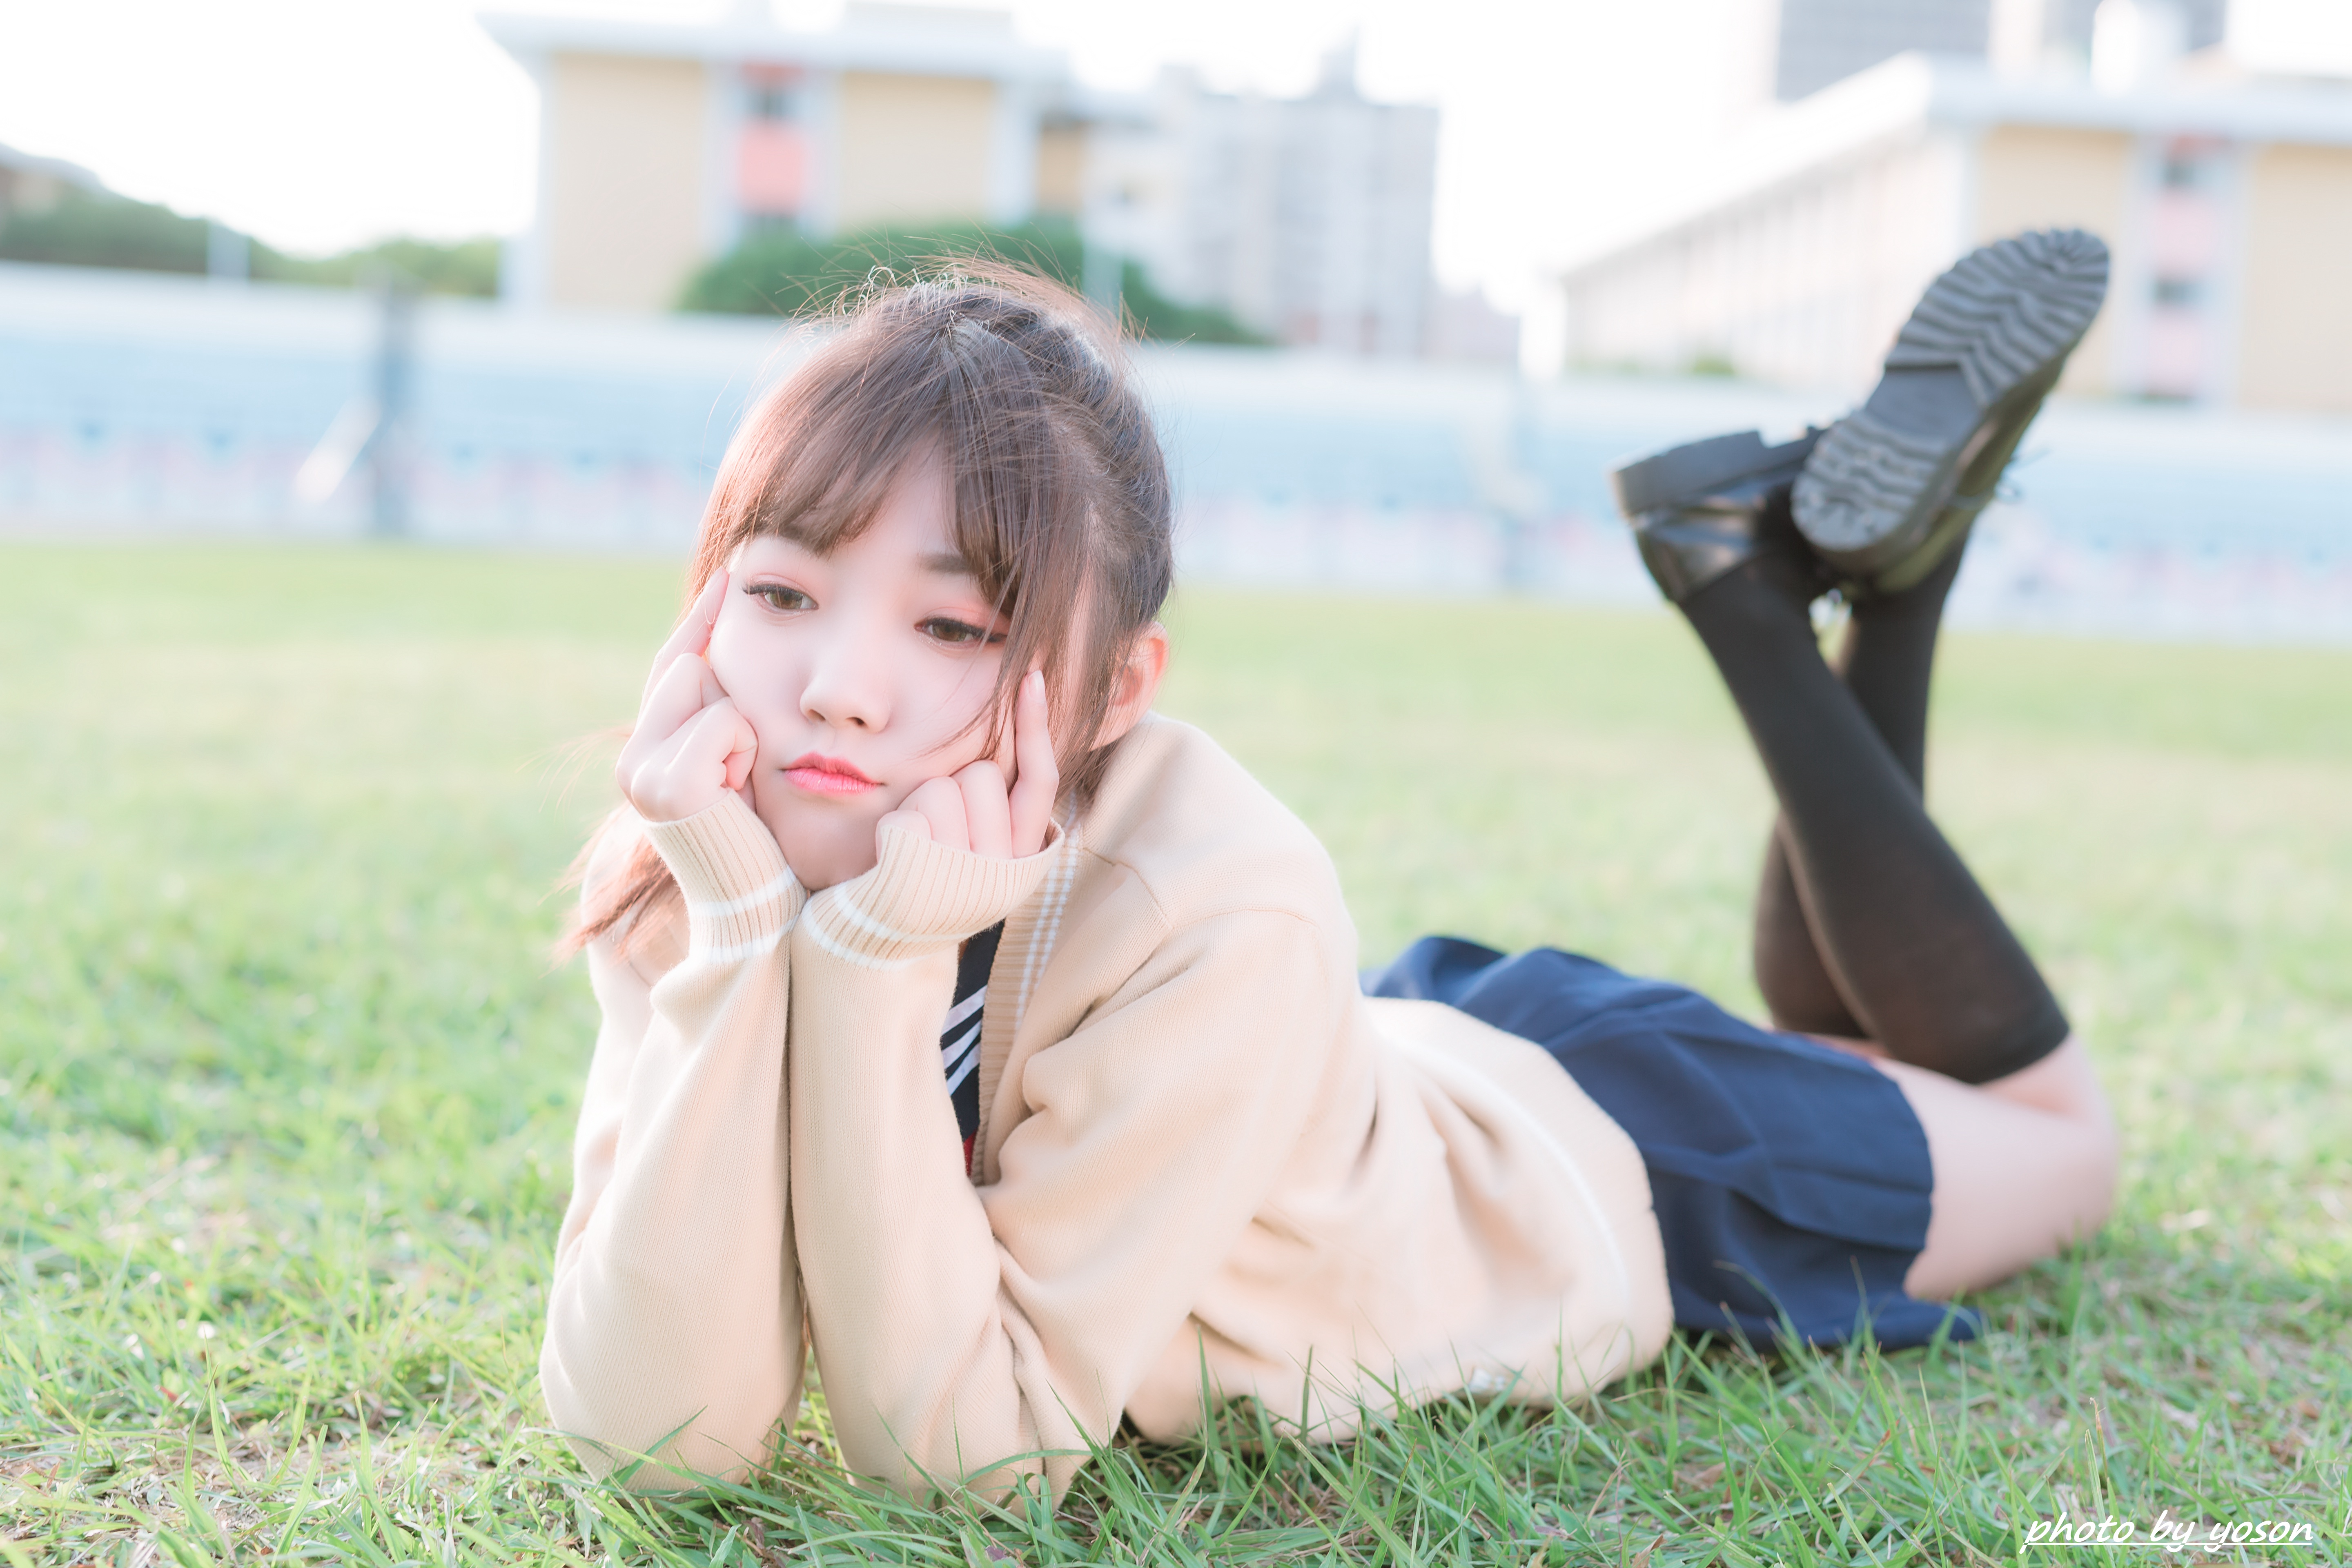 Asian Model Women Long Hair Brunette Lying Down Grass Skirt Pullover Ponytail Hand On Face Black Soc 5760x3840